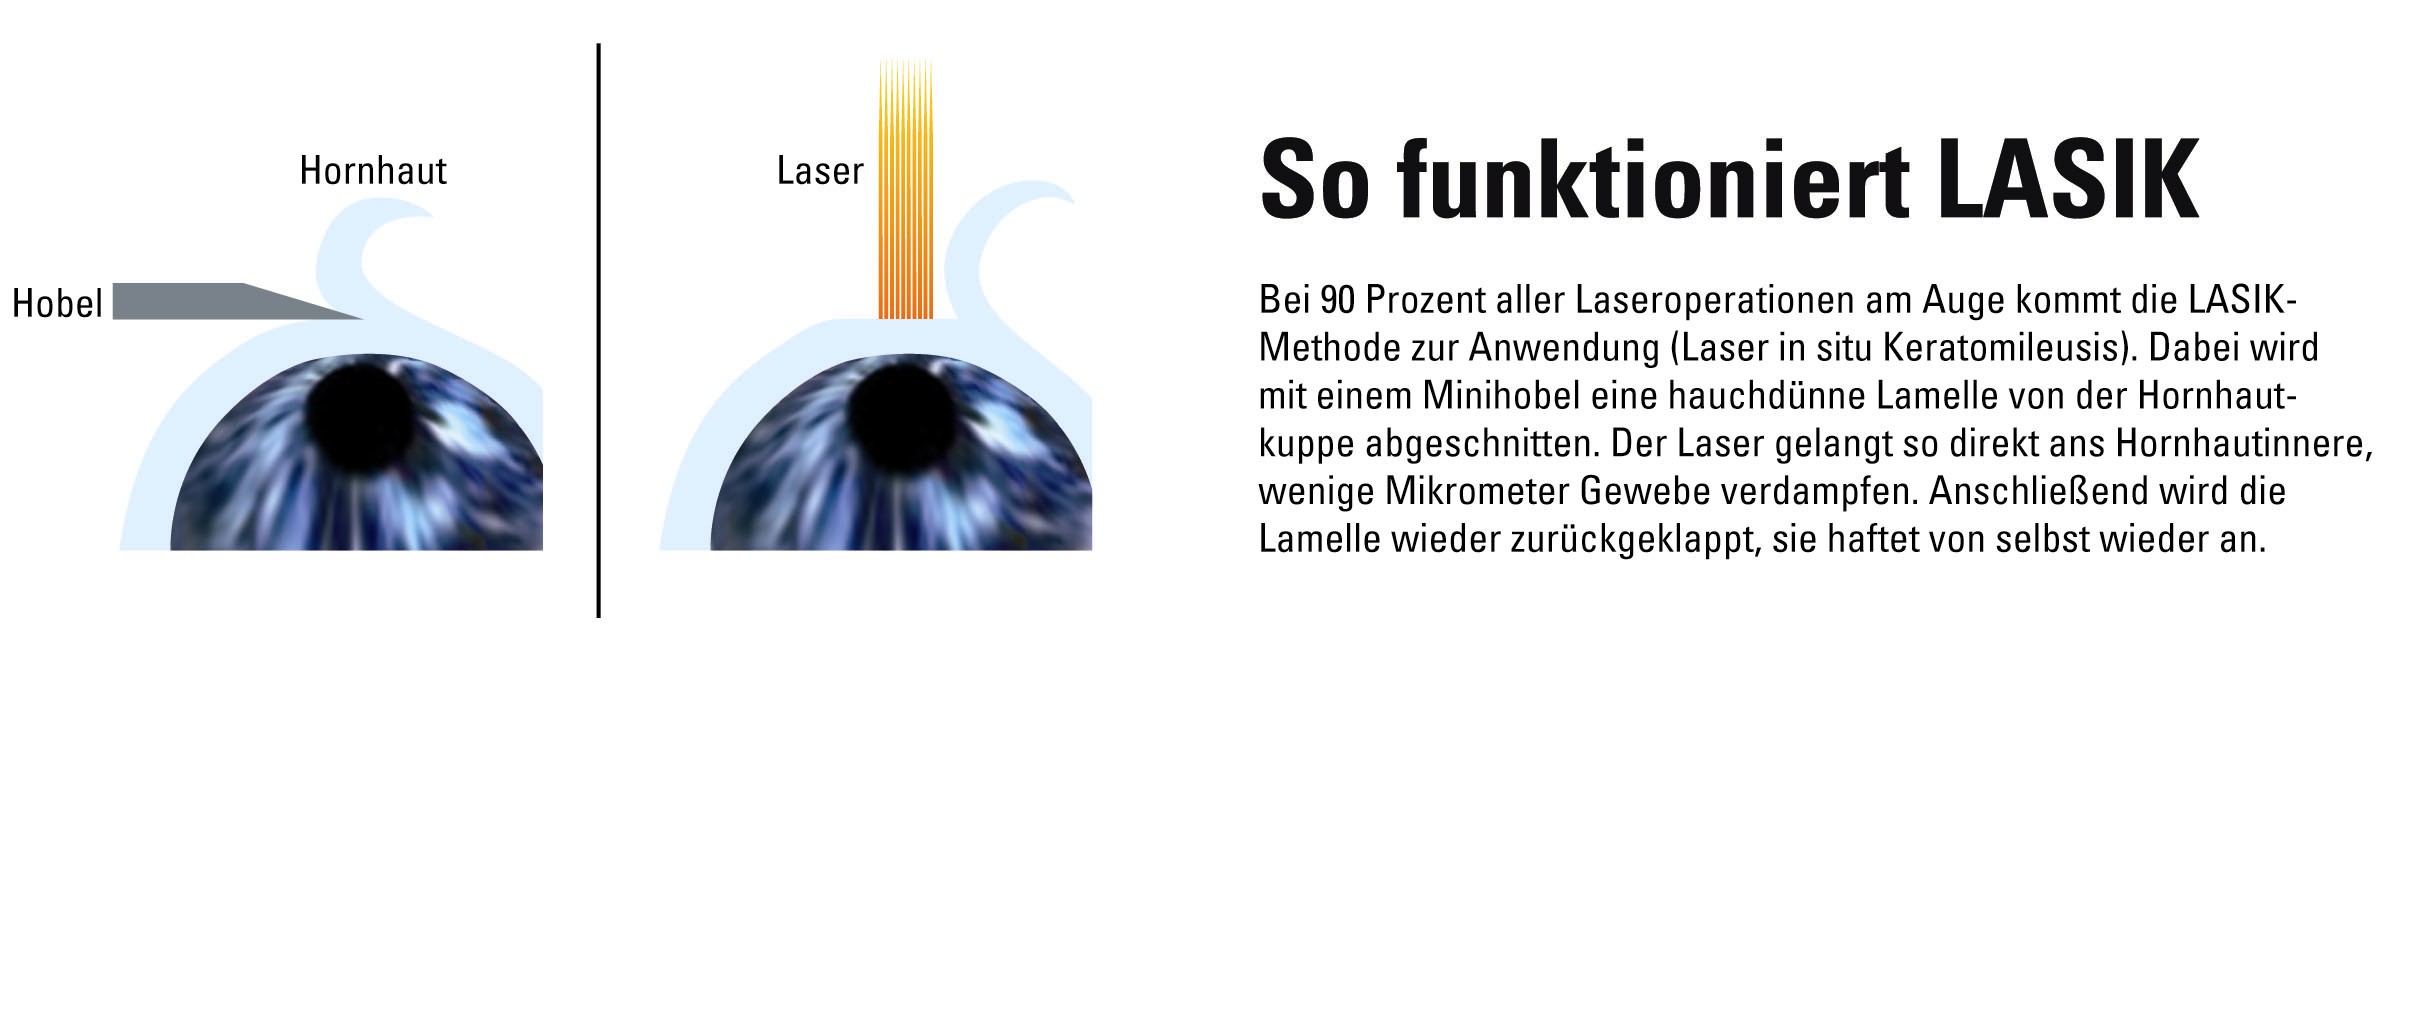 Der Lasik Tuv Sorgt Fur Durchblick Bei Laseroperationen Am Auge Tuv Sud Ag Pressemitteilung Pressebox